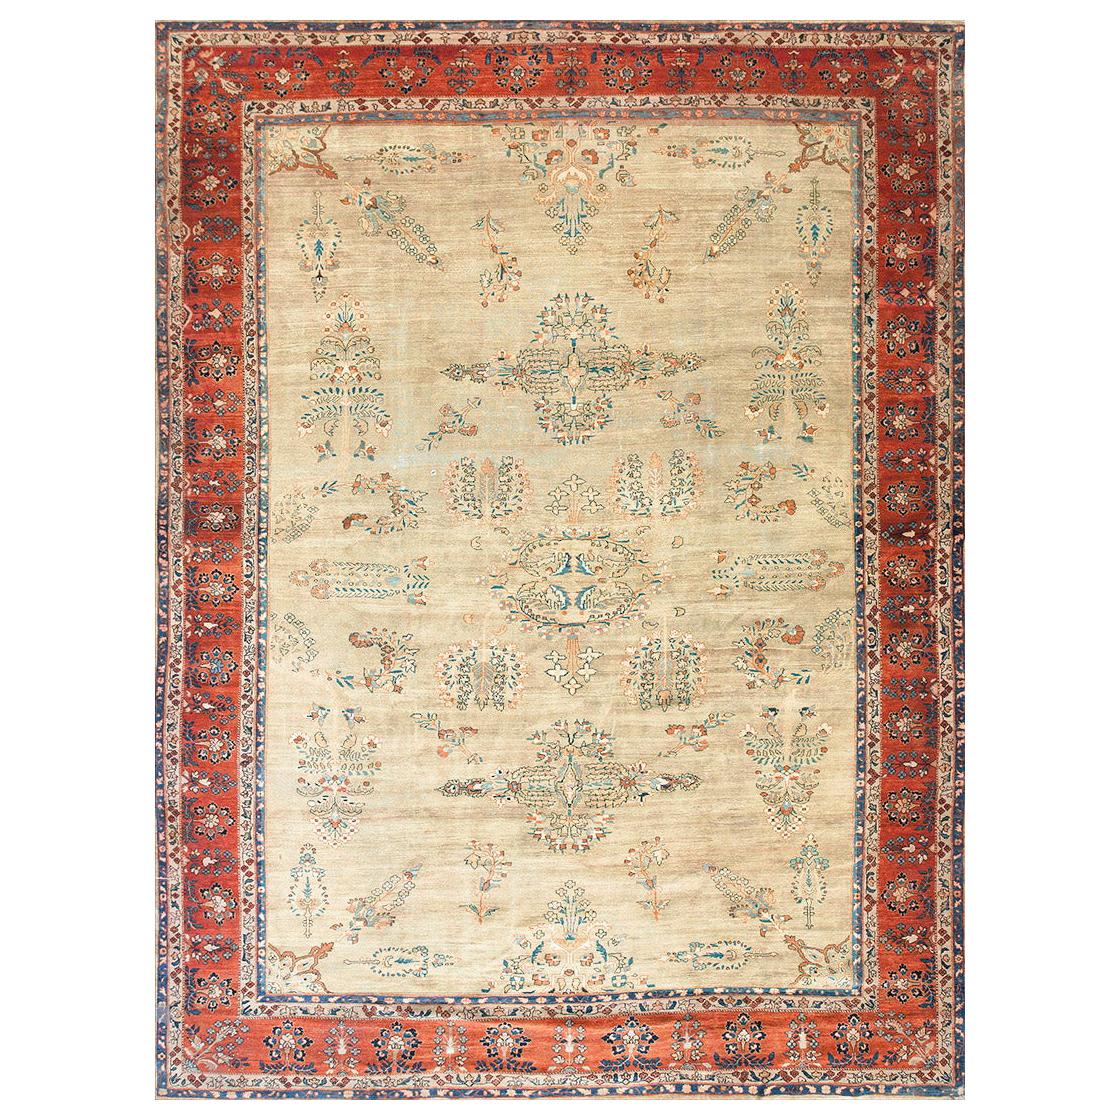 Late 19th Century Persian Farahan Carpet ( 10' x 13'4" - 305 x 405 )